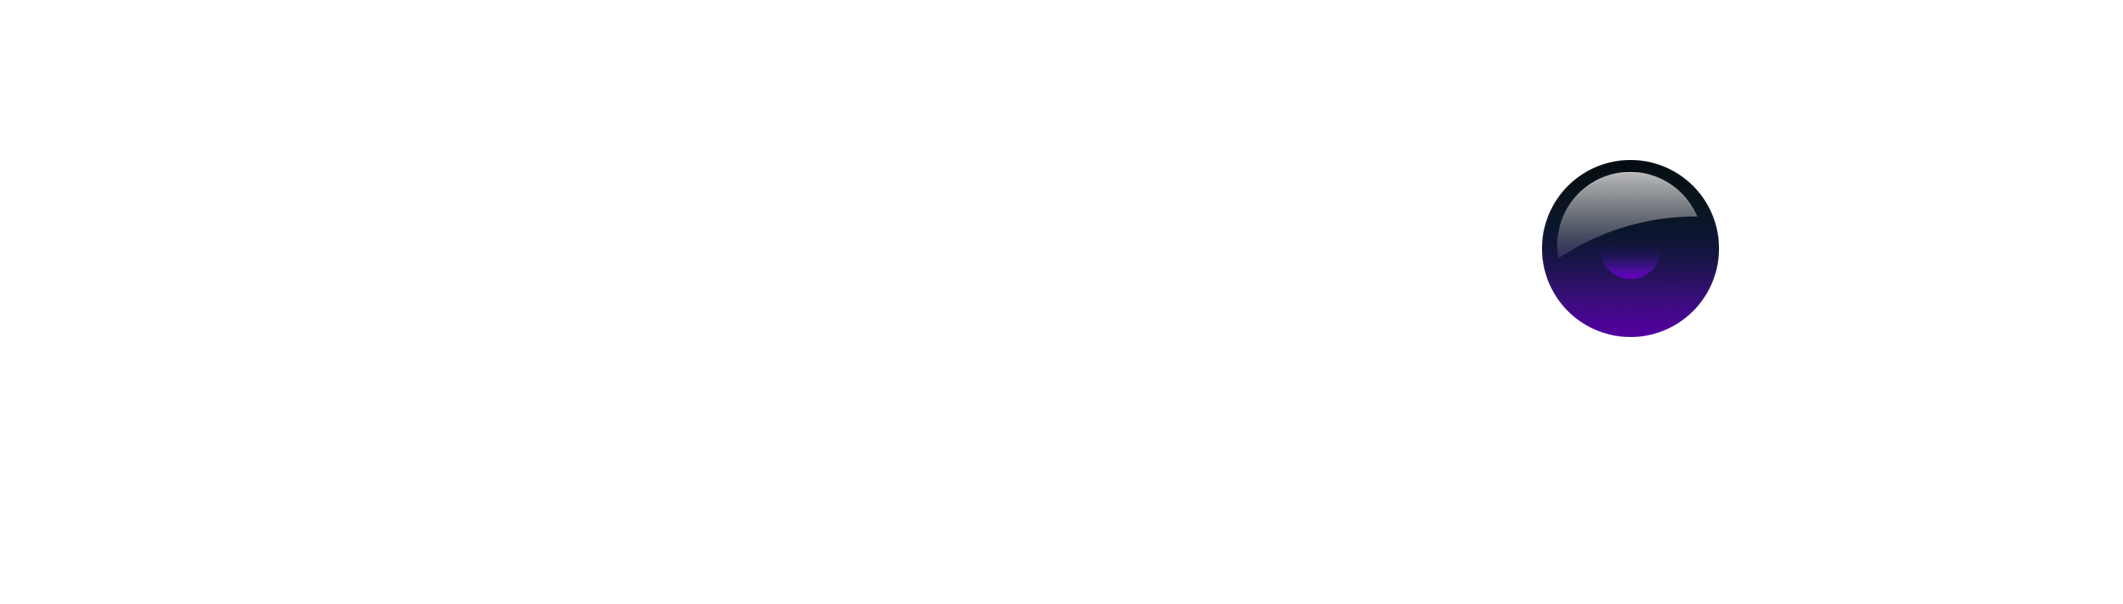 Frankcroft.com